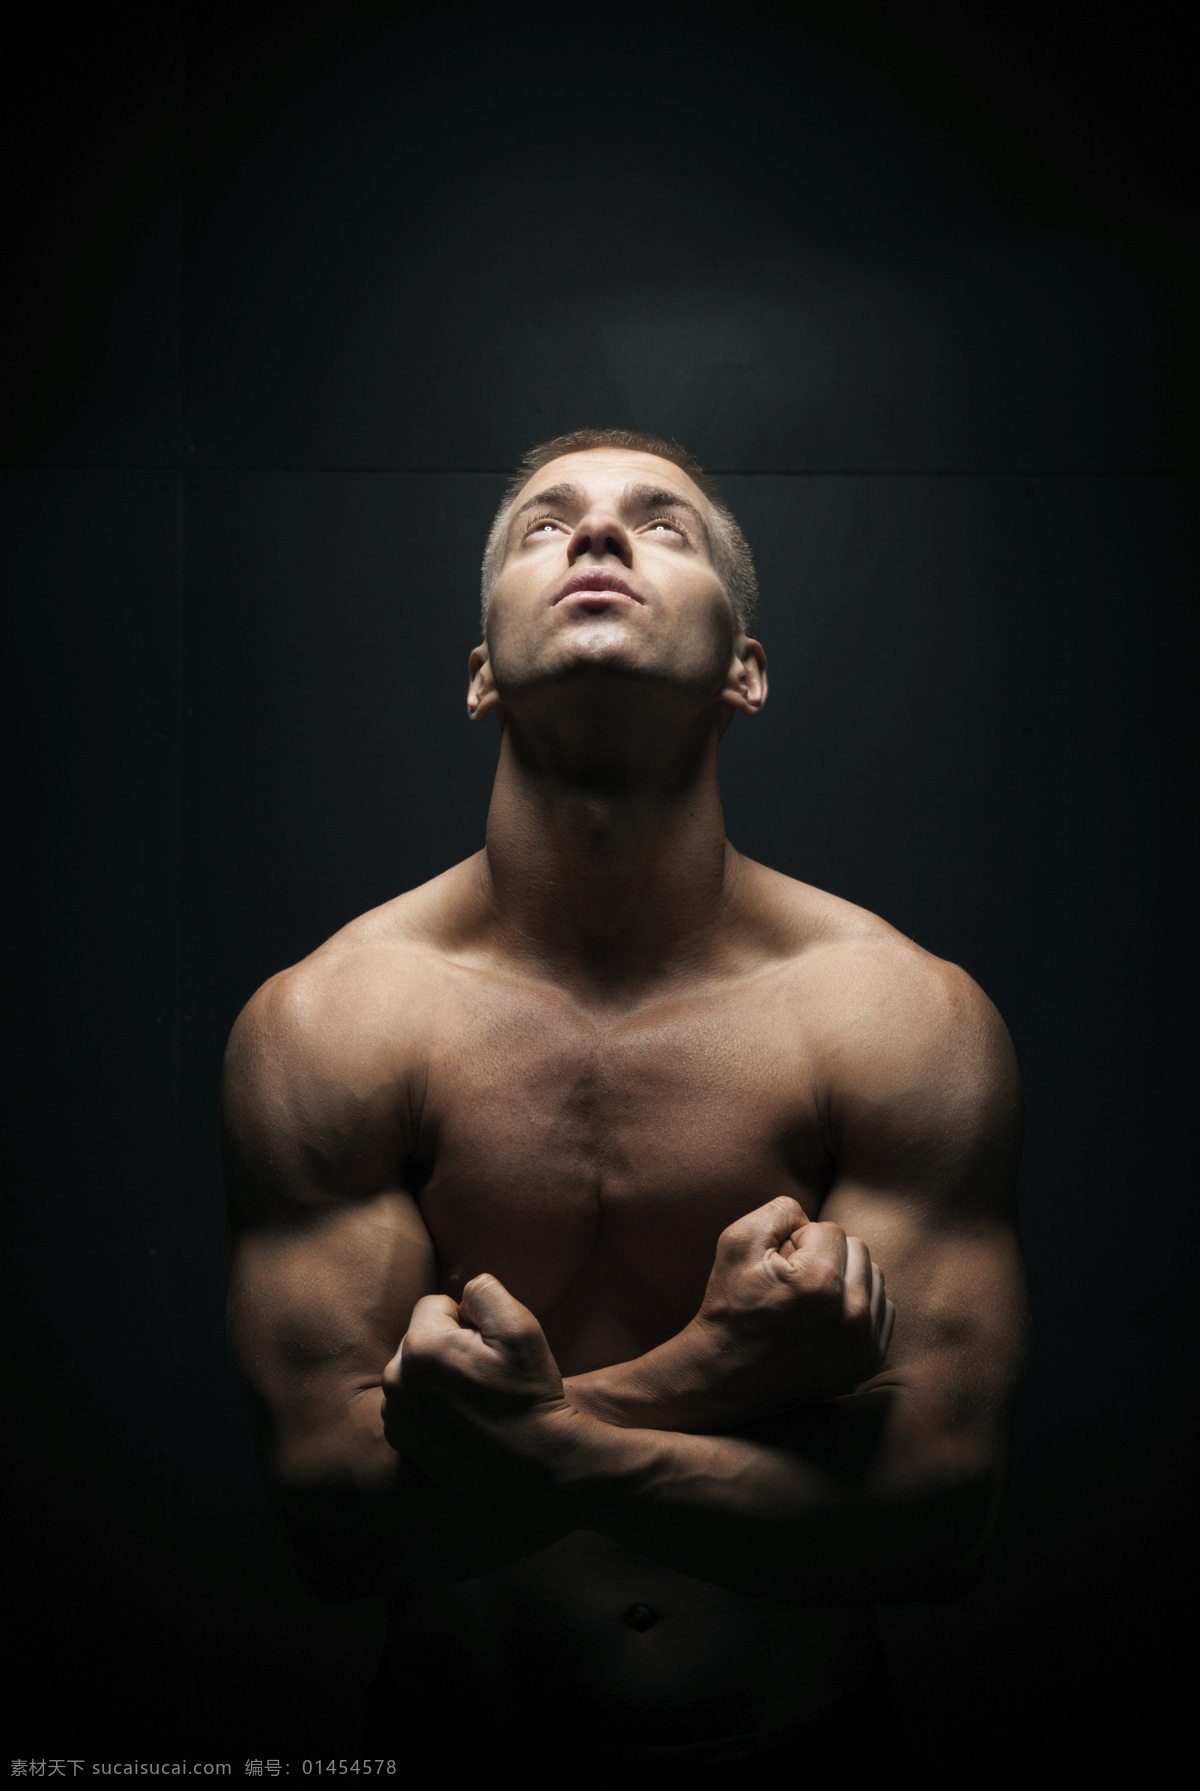 展示 肌肉 男人 强壮男人 肌肉男 健美身材 健身 猛男 强壮肌肉 胸肌 腹肌 外国男人 男模 男性模特 欧美男性 男人图片 人物图片